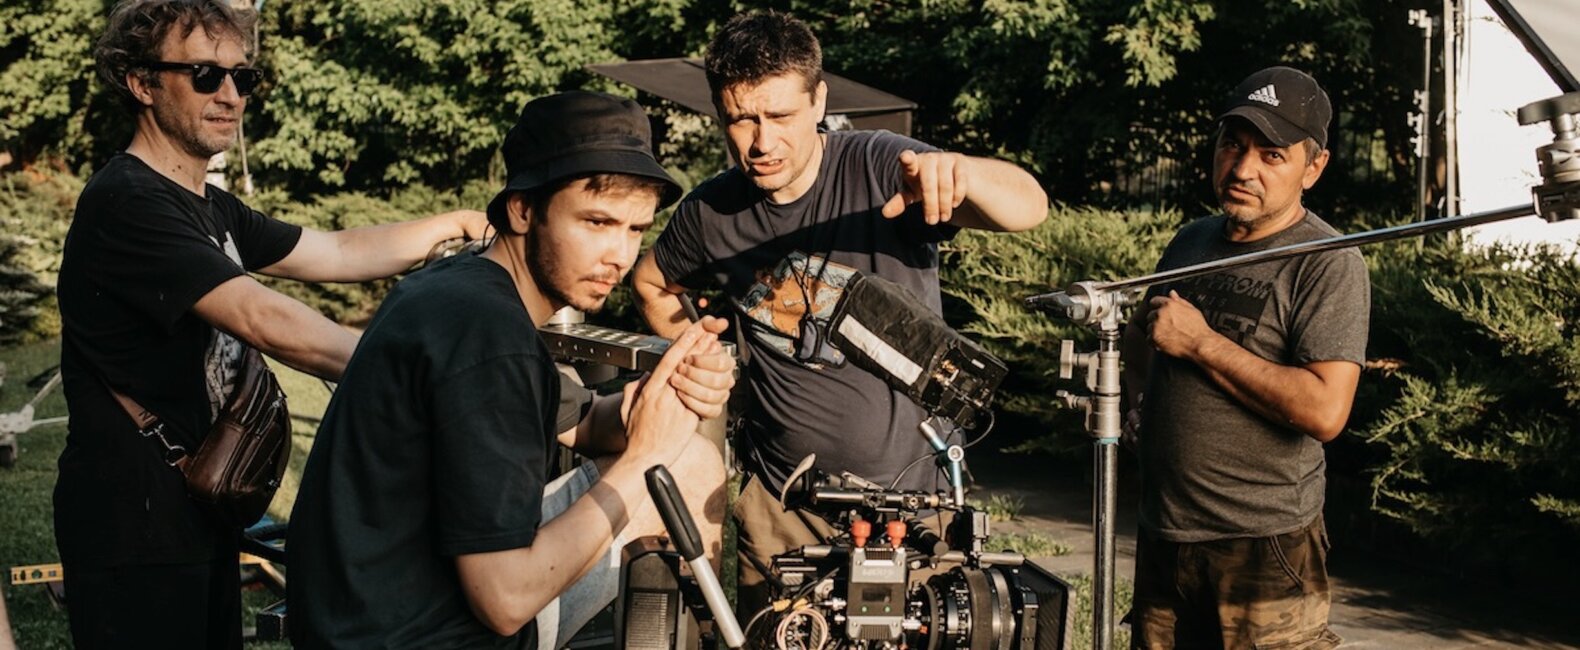 Filmmaker Andrew Beresnev